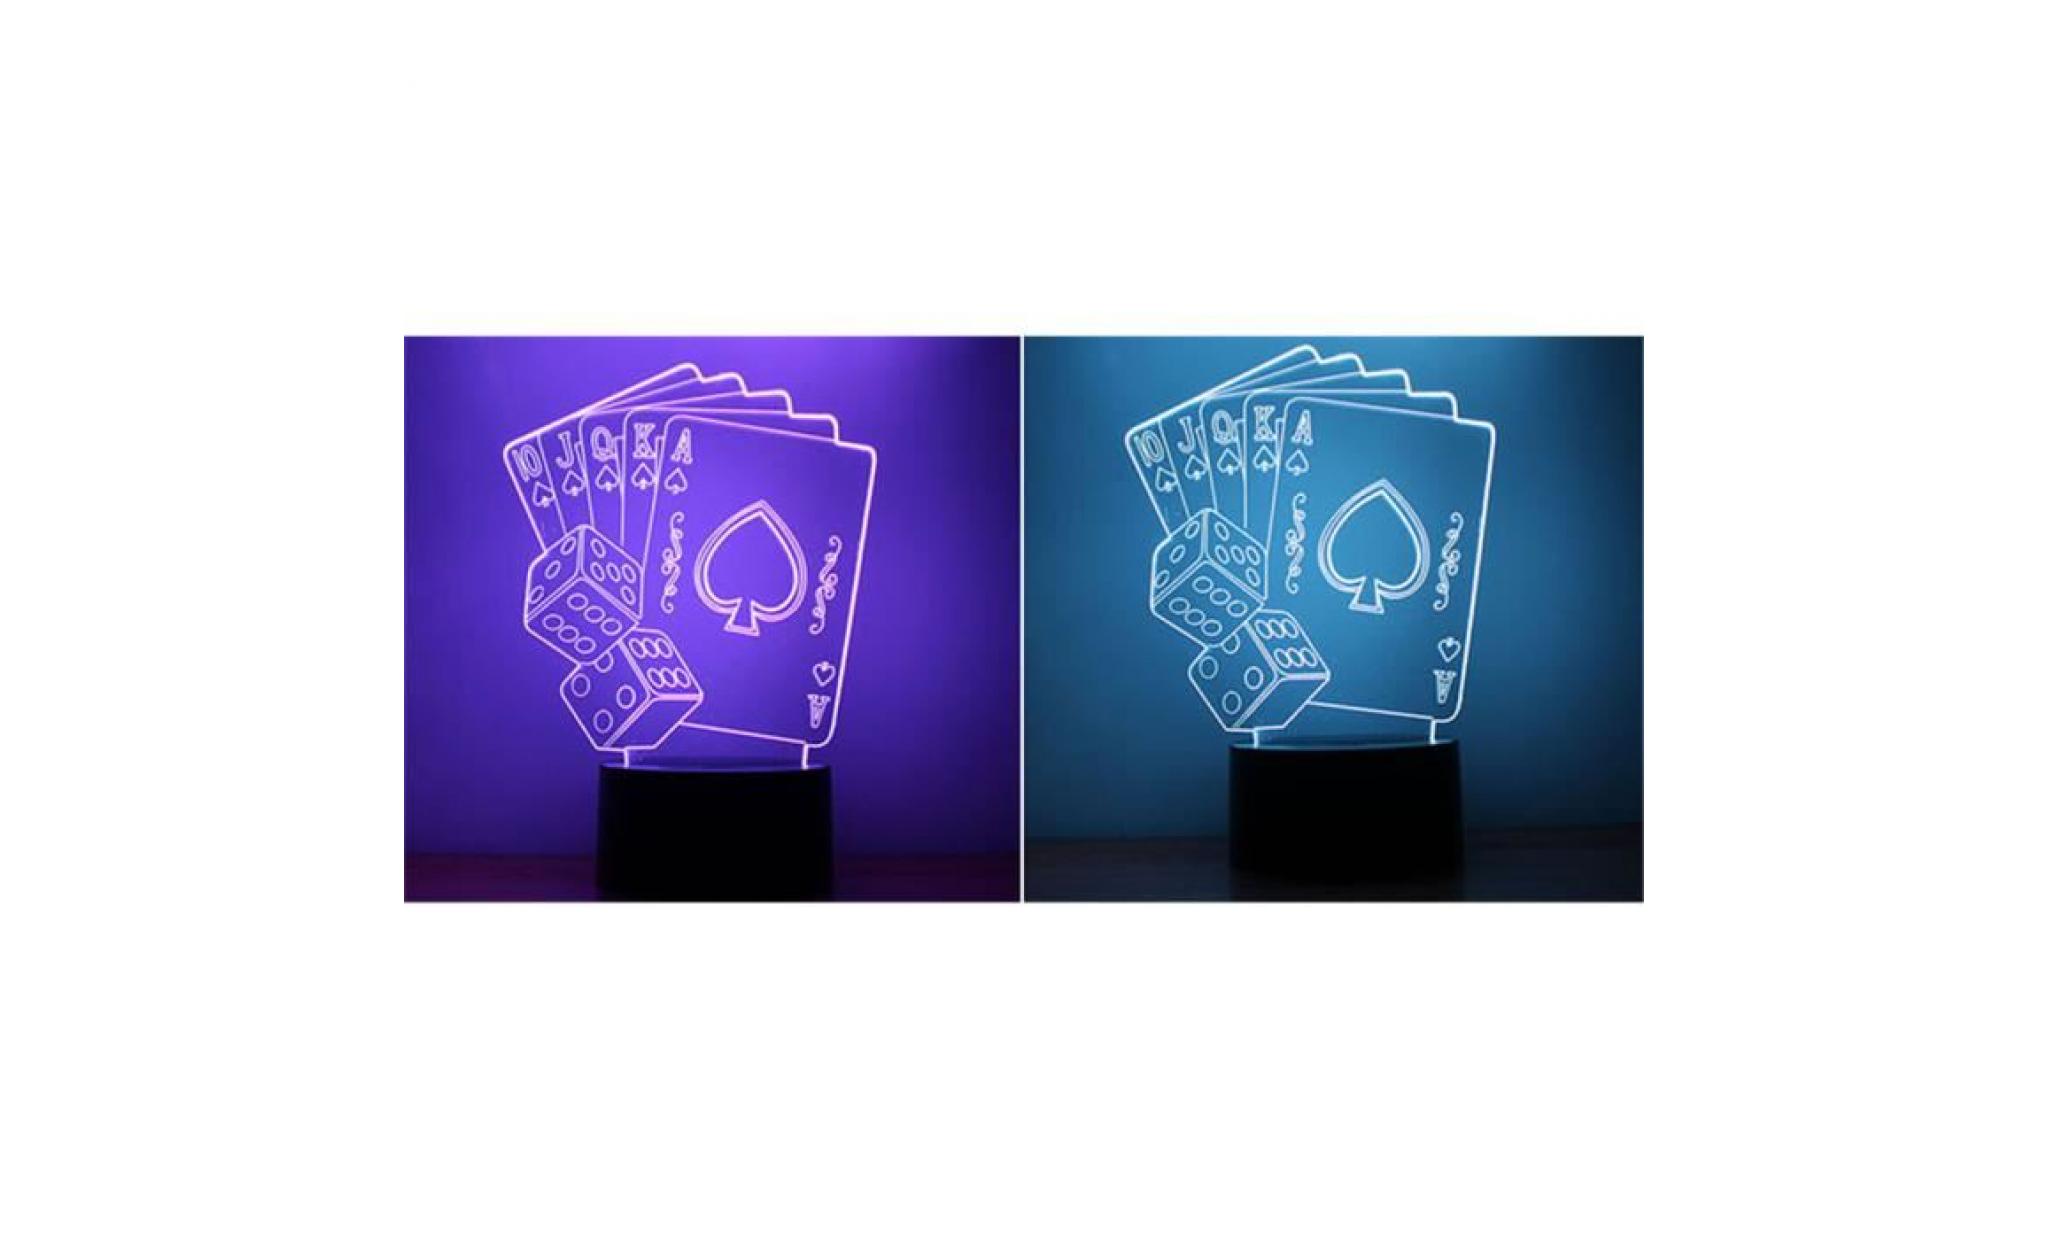 led card poker 3d night light lampes illusion optique 3d 7 couleurs pour la maison li327 pas cher